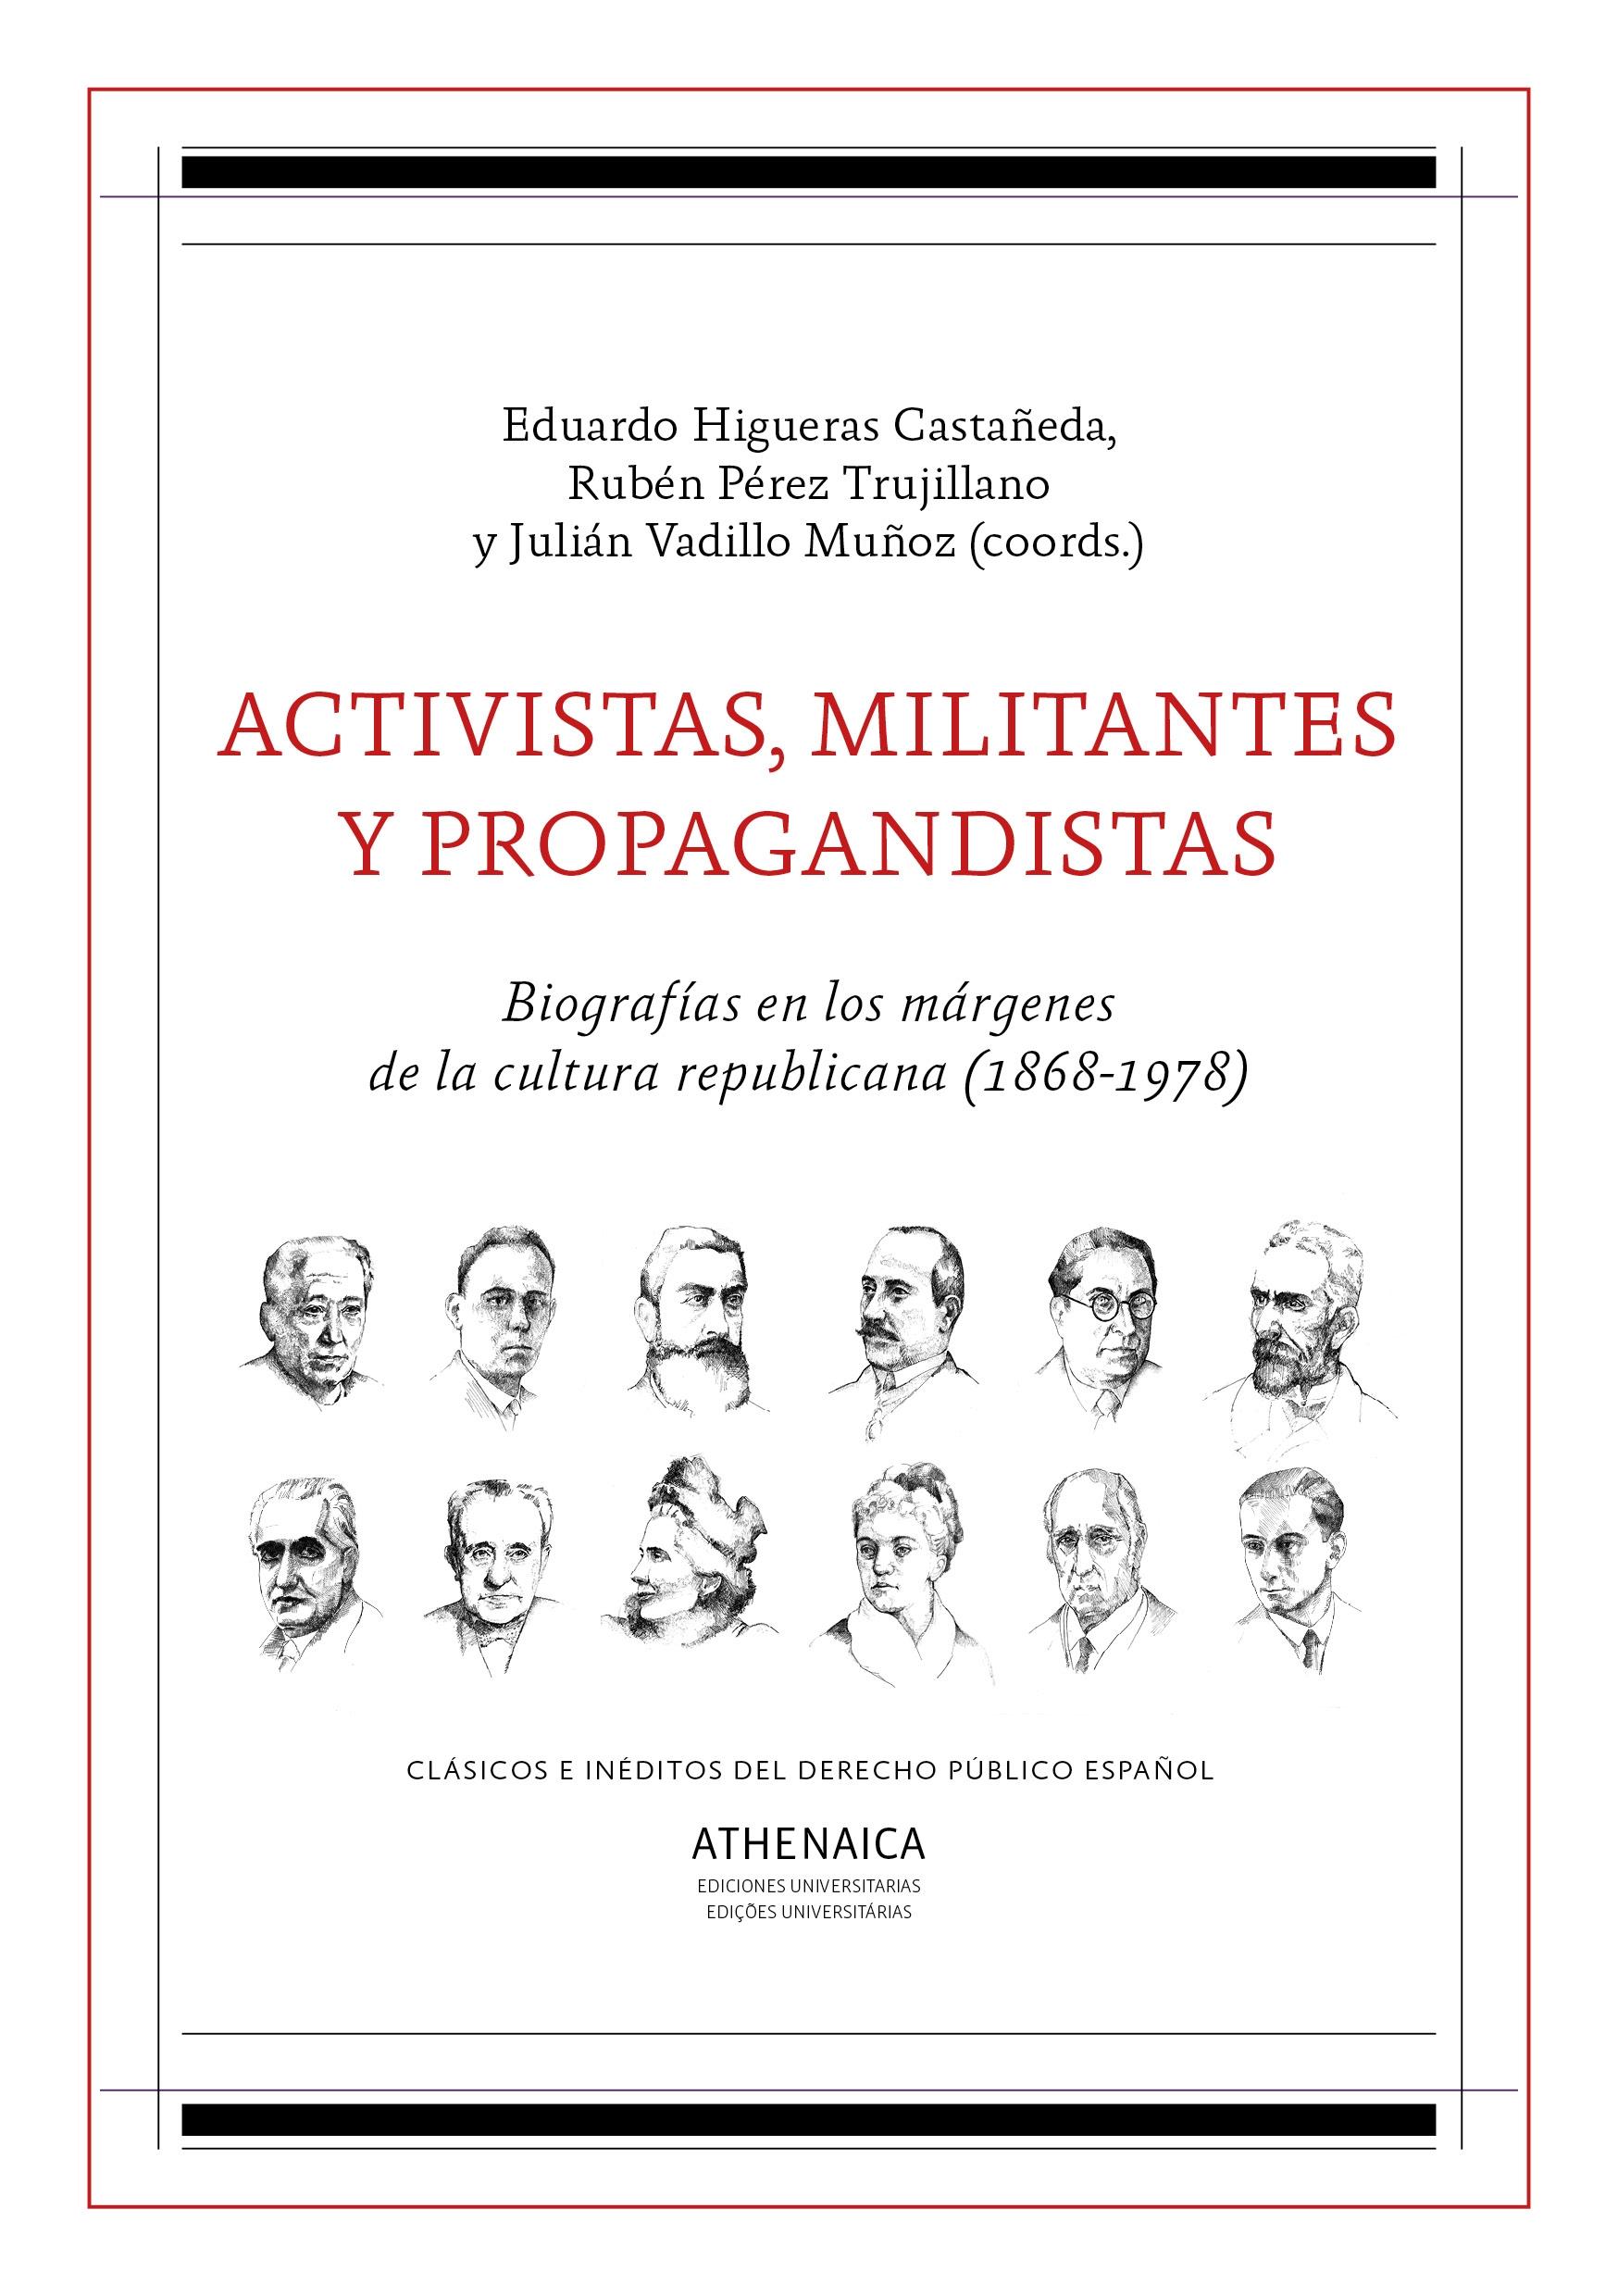 Activistas, Militantes y Propagandistas "Biografías en los Márgenes de la Cultura Republicana (1868-1978)". 